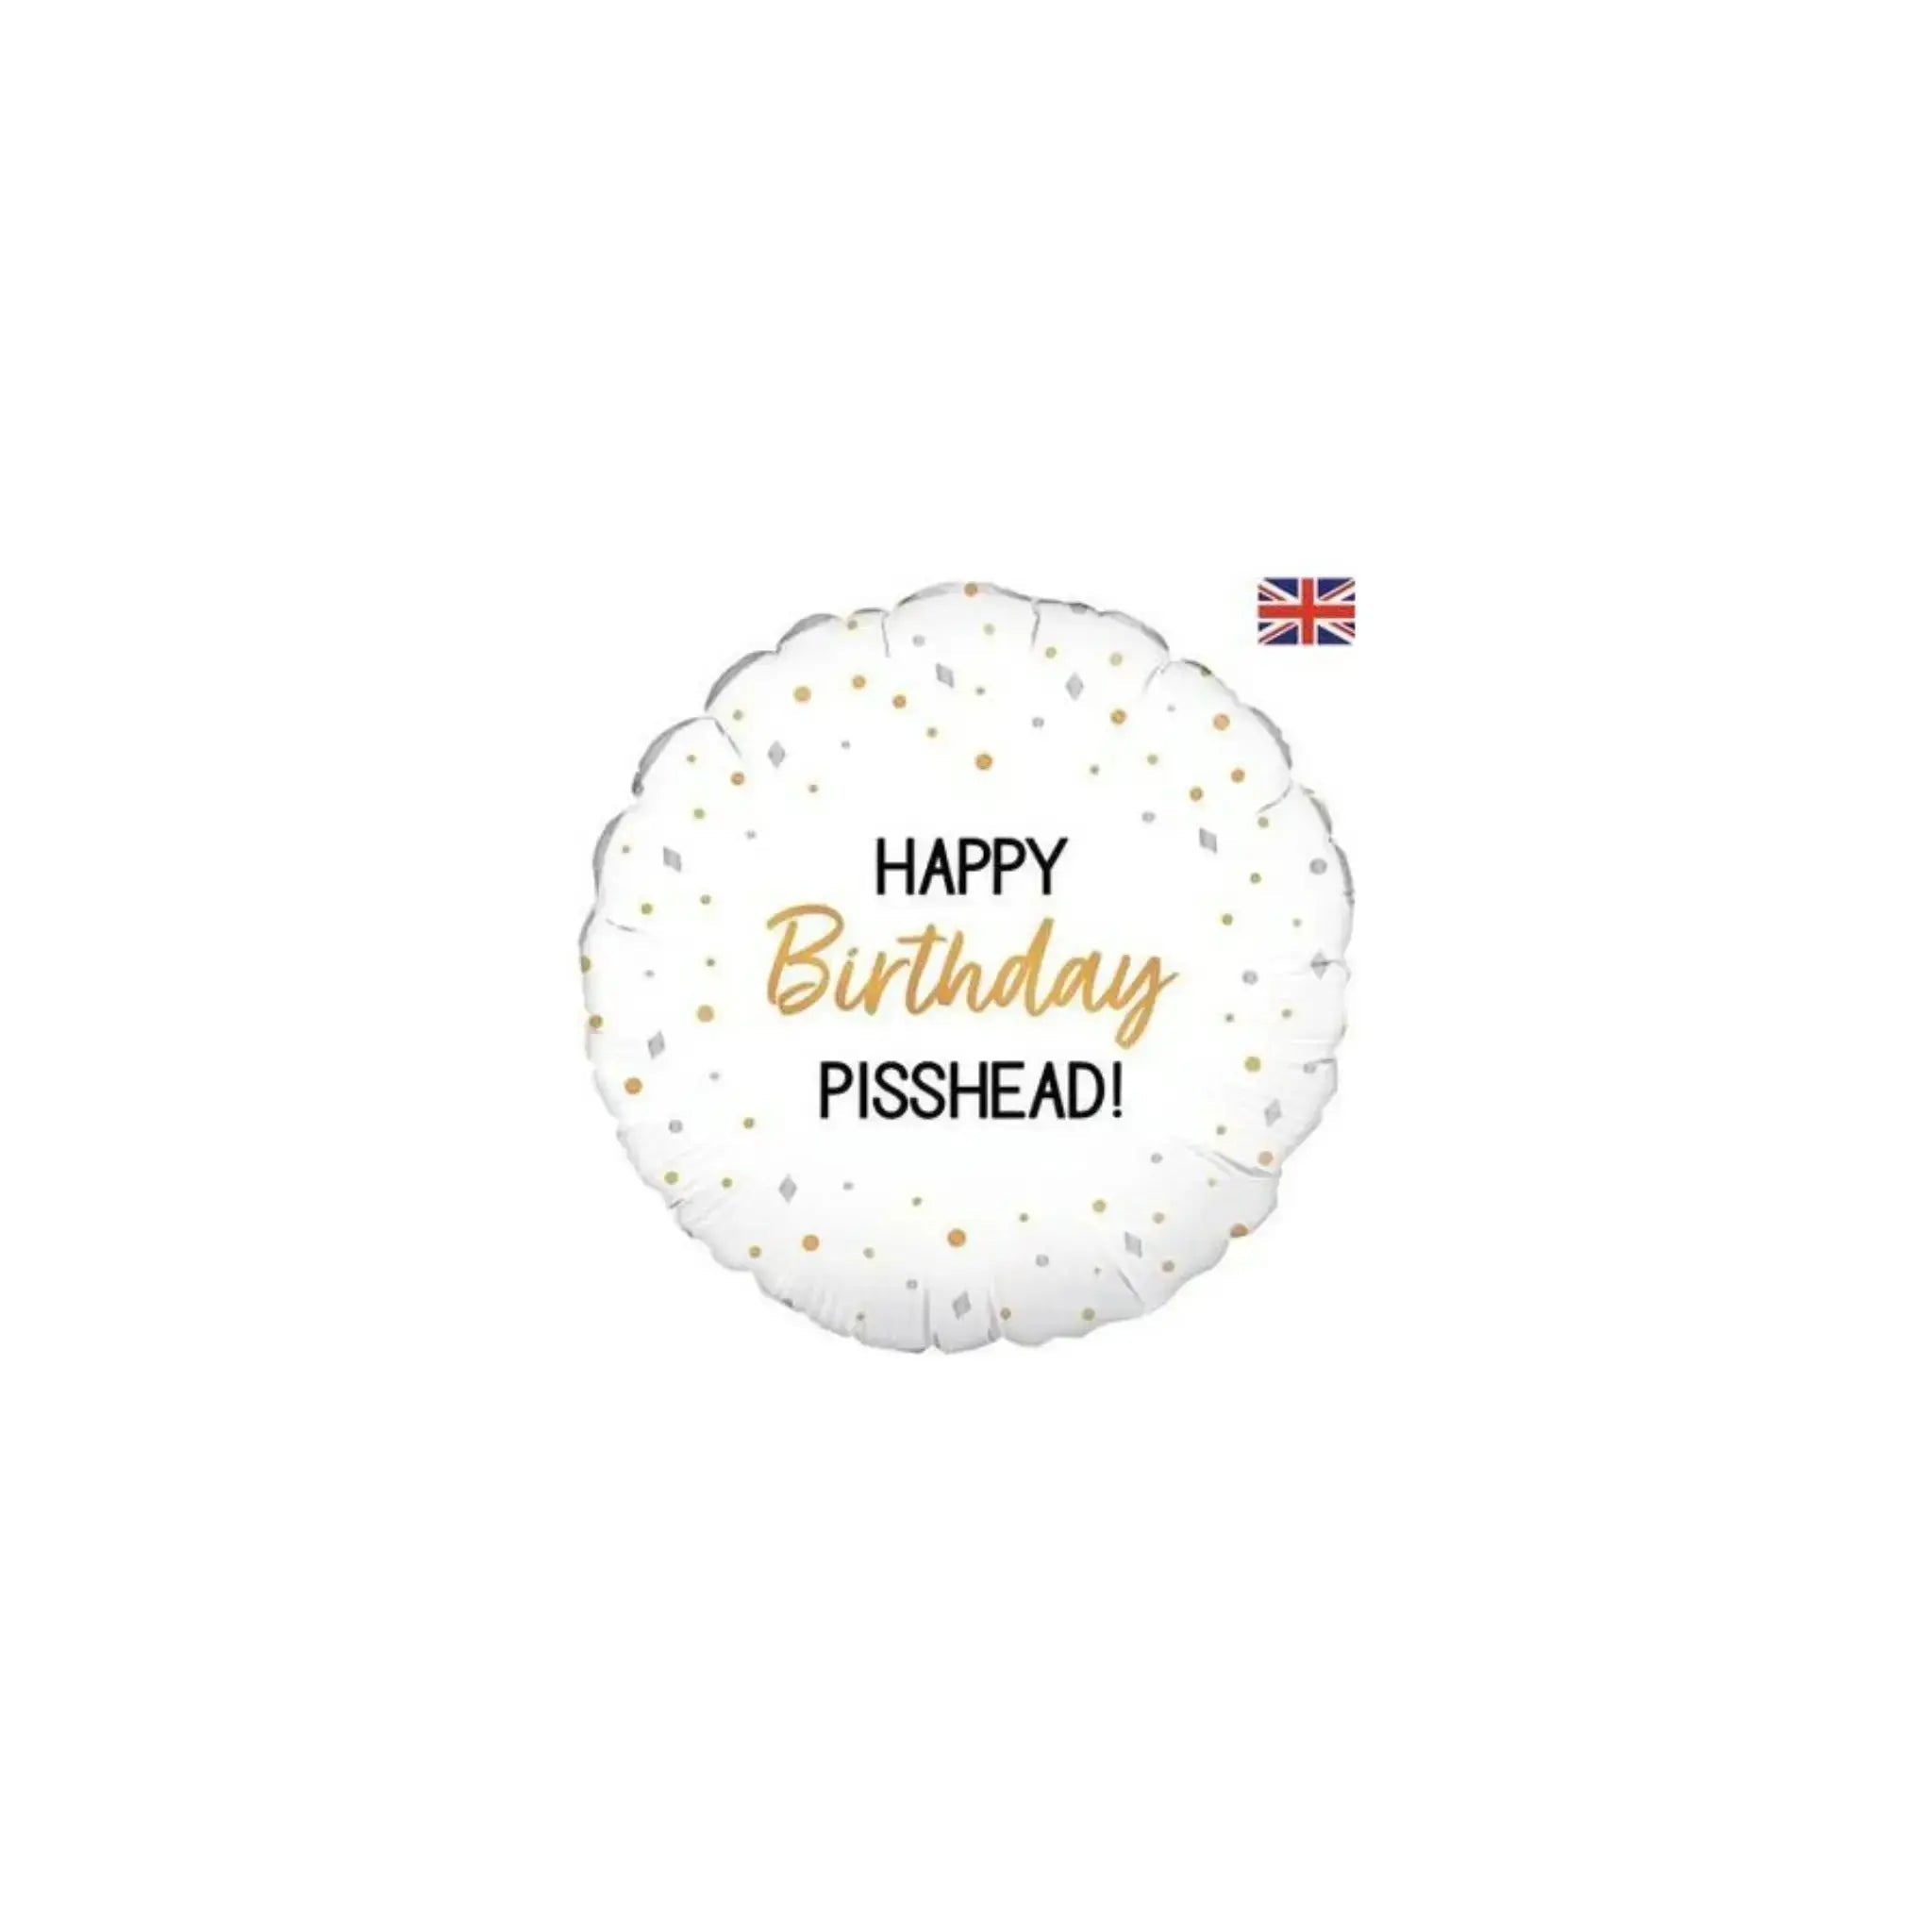 Happy Birthday Pisshead Balloon | The Party Hut